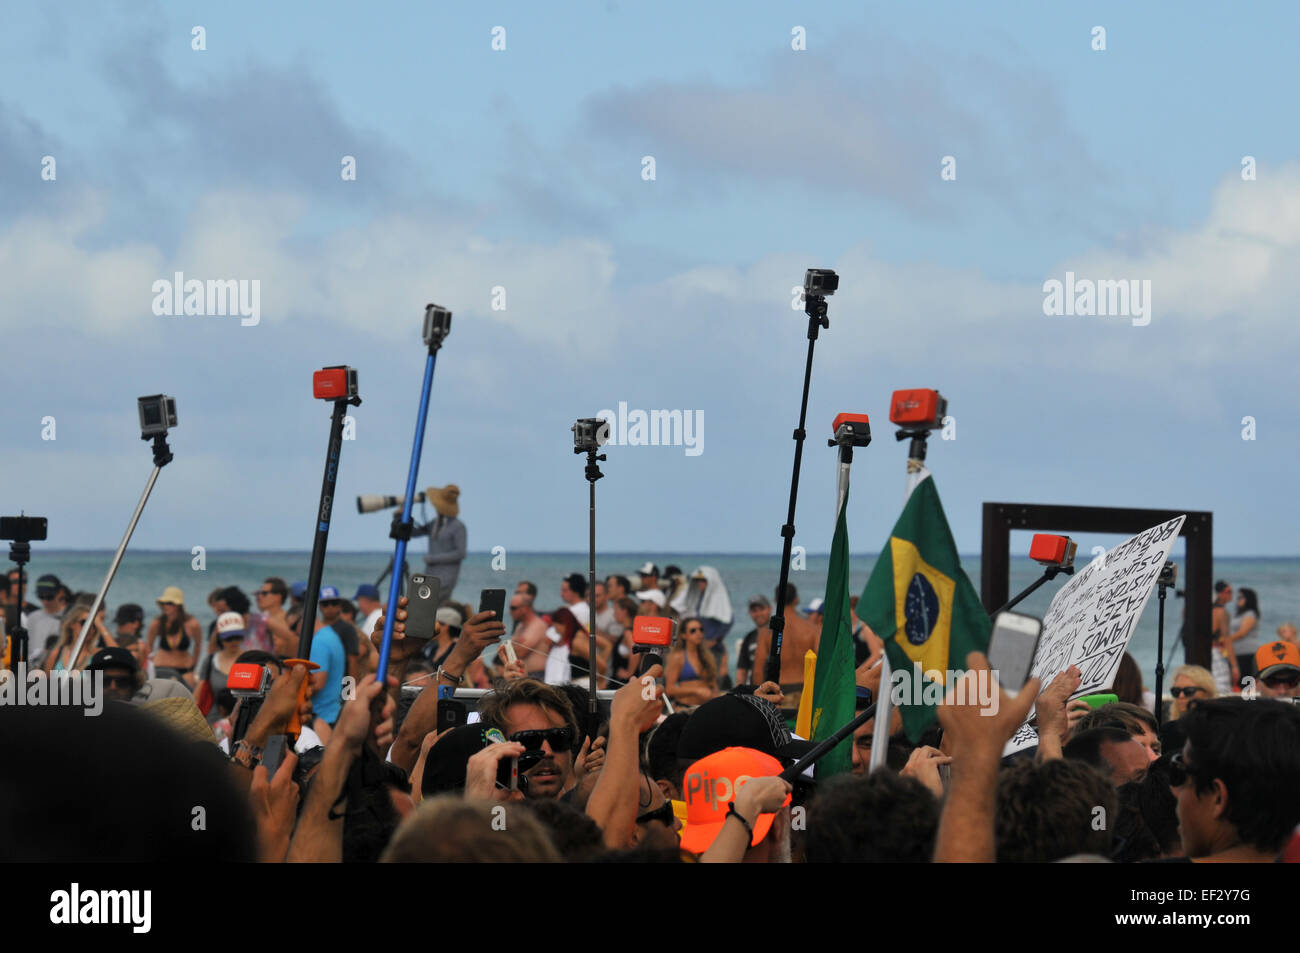 Multitud de fans y sus palos selfie esperar a Gabriel Medina, el primer surfista en ganar un título mundial para Brasil, Banzai Pipeline Foto de stock